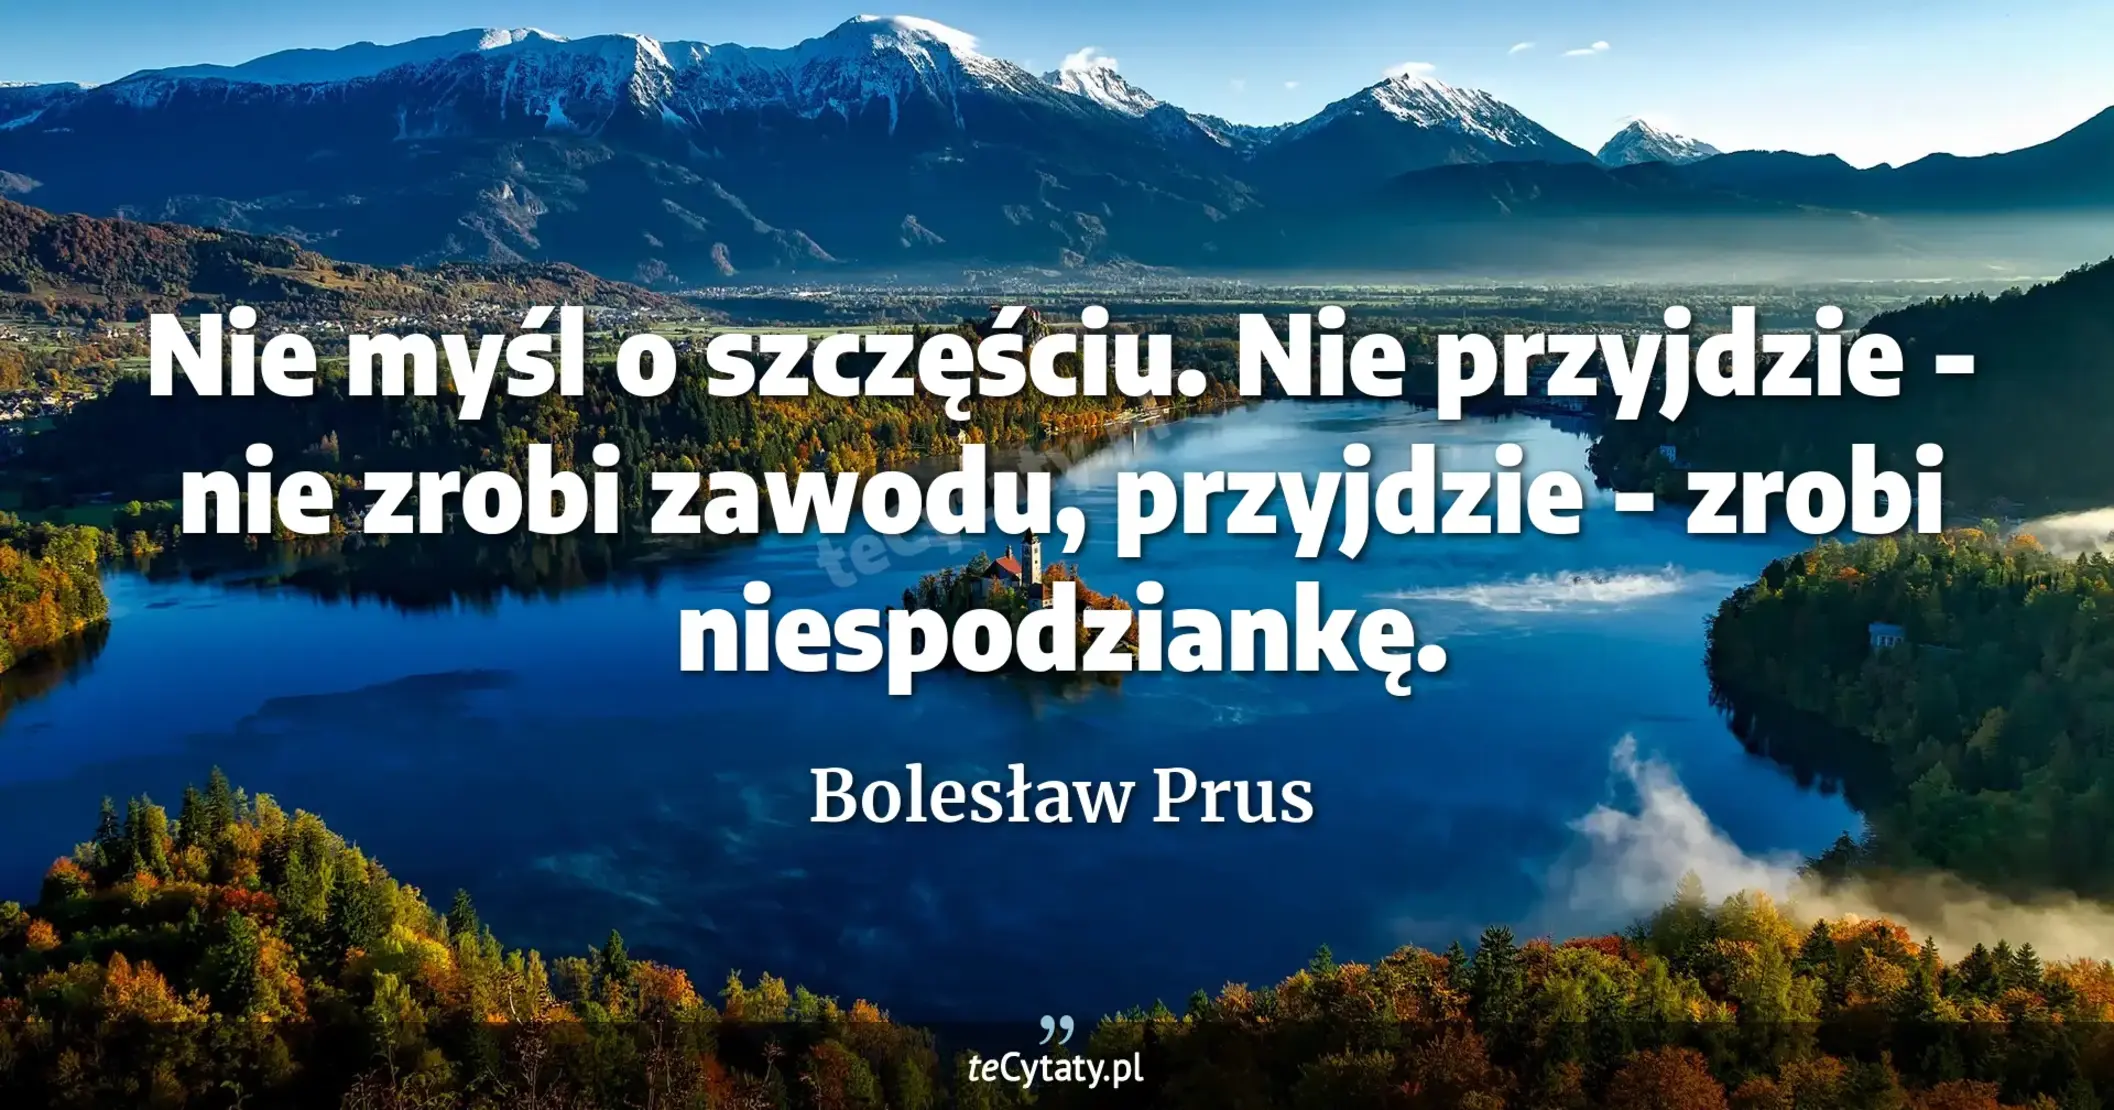 Nie myśl o szczęściu. Nie przyjdzie - nie zrobi zawodu, przyjdzie - zrobi niespodziankę. - Bolesław Prus